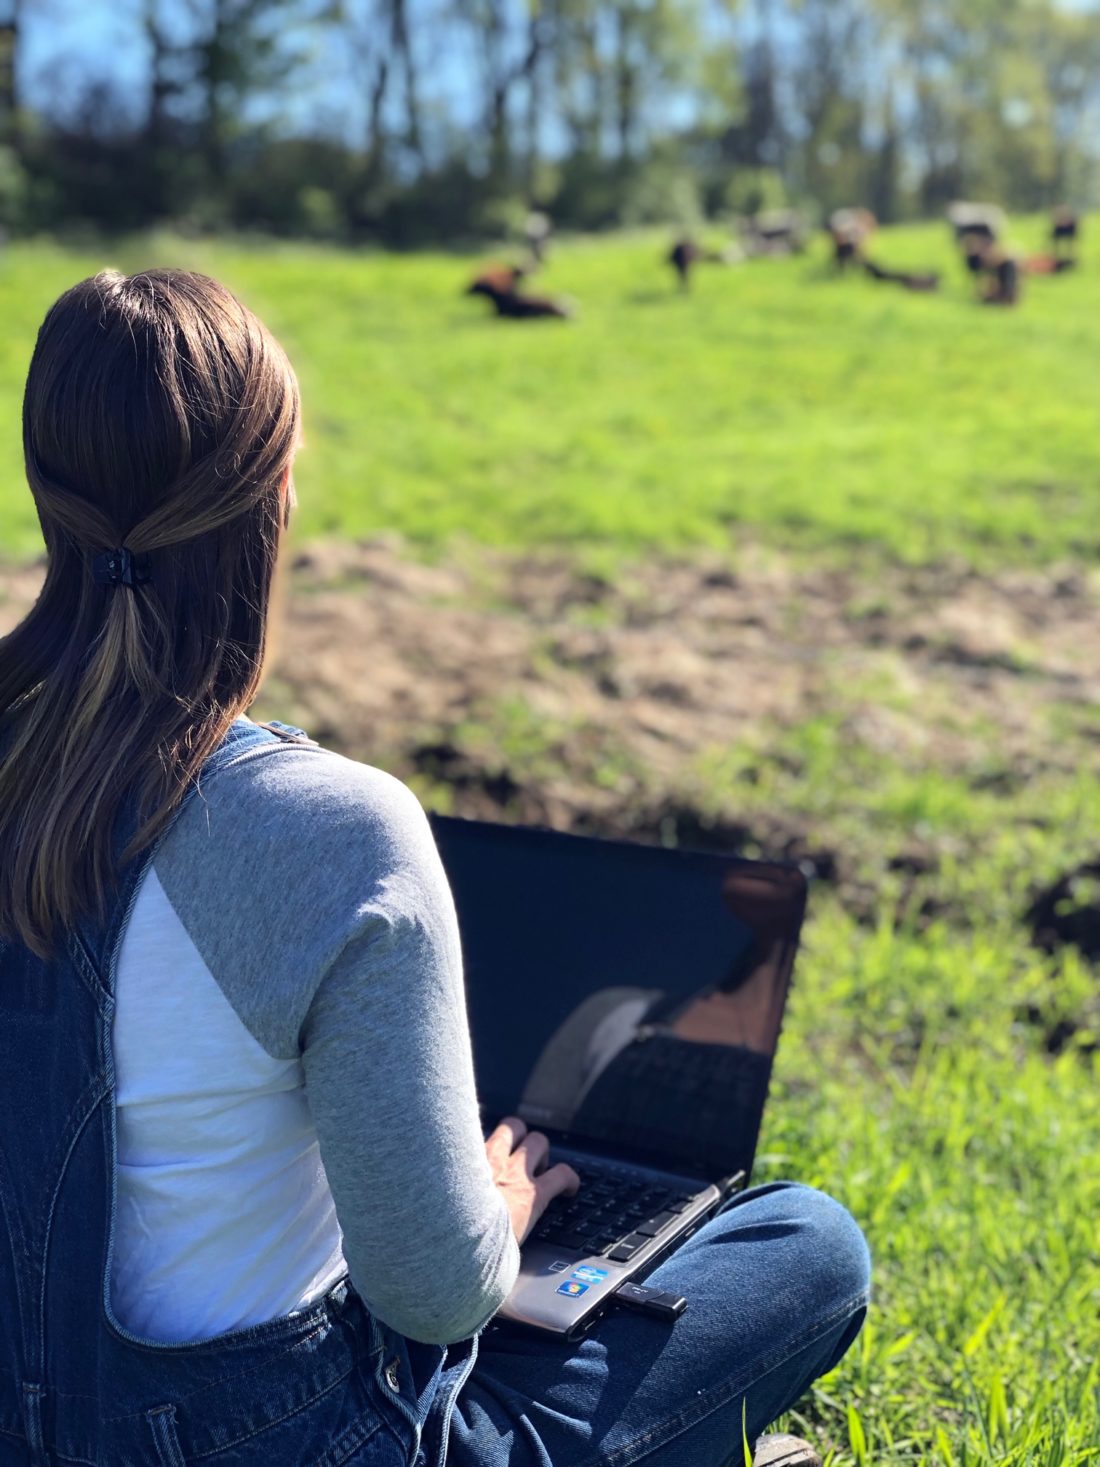 Woman using laptop in field.